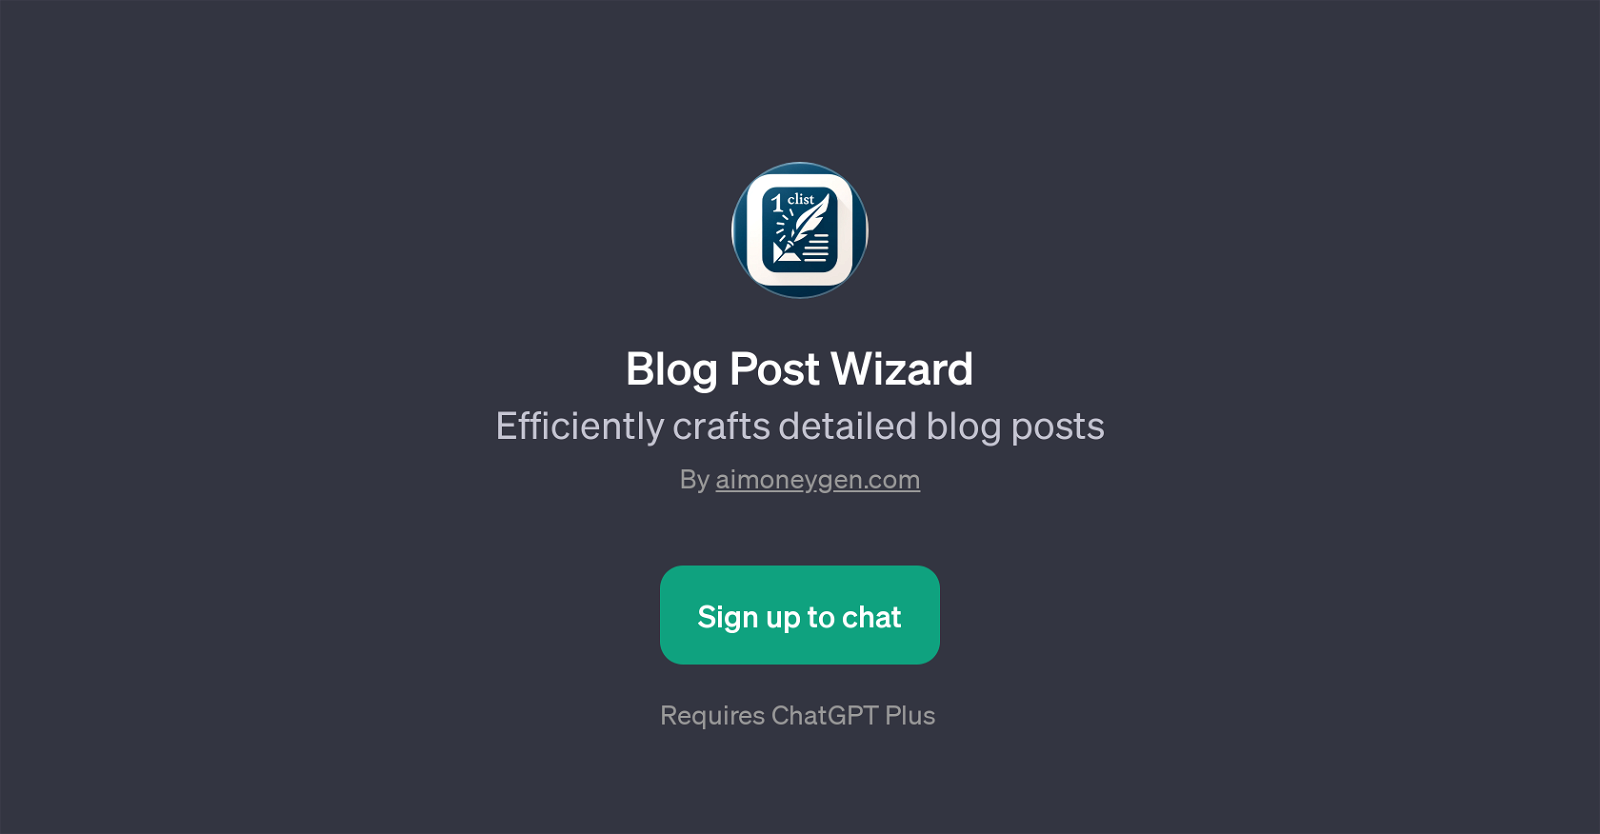 Blog Post Wizard website